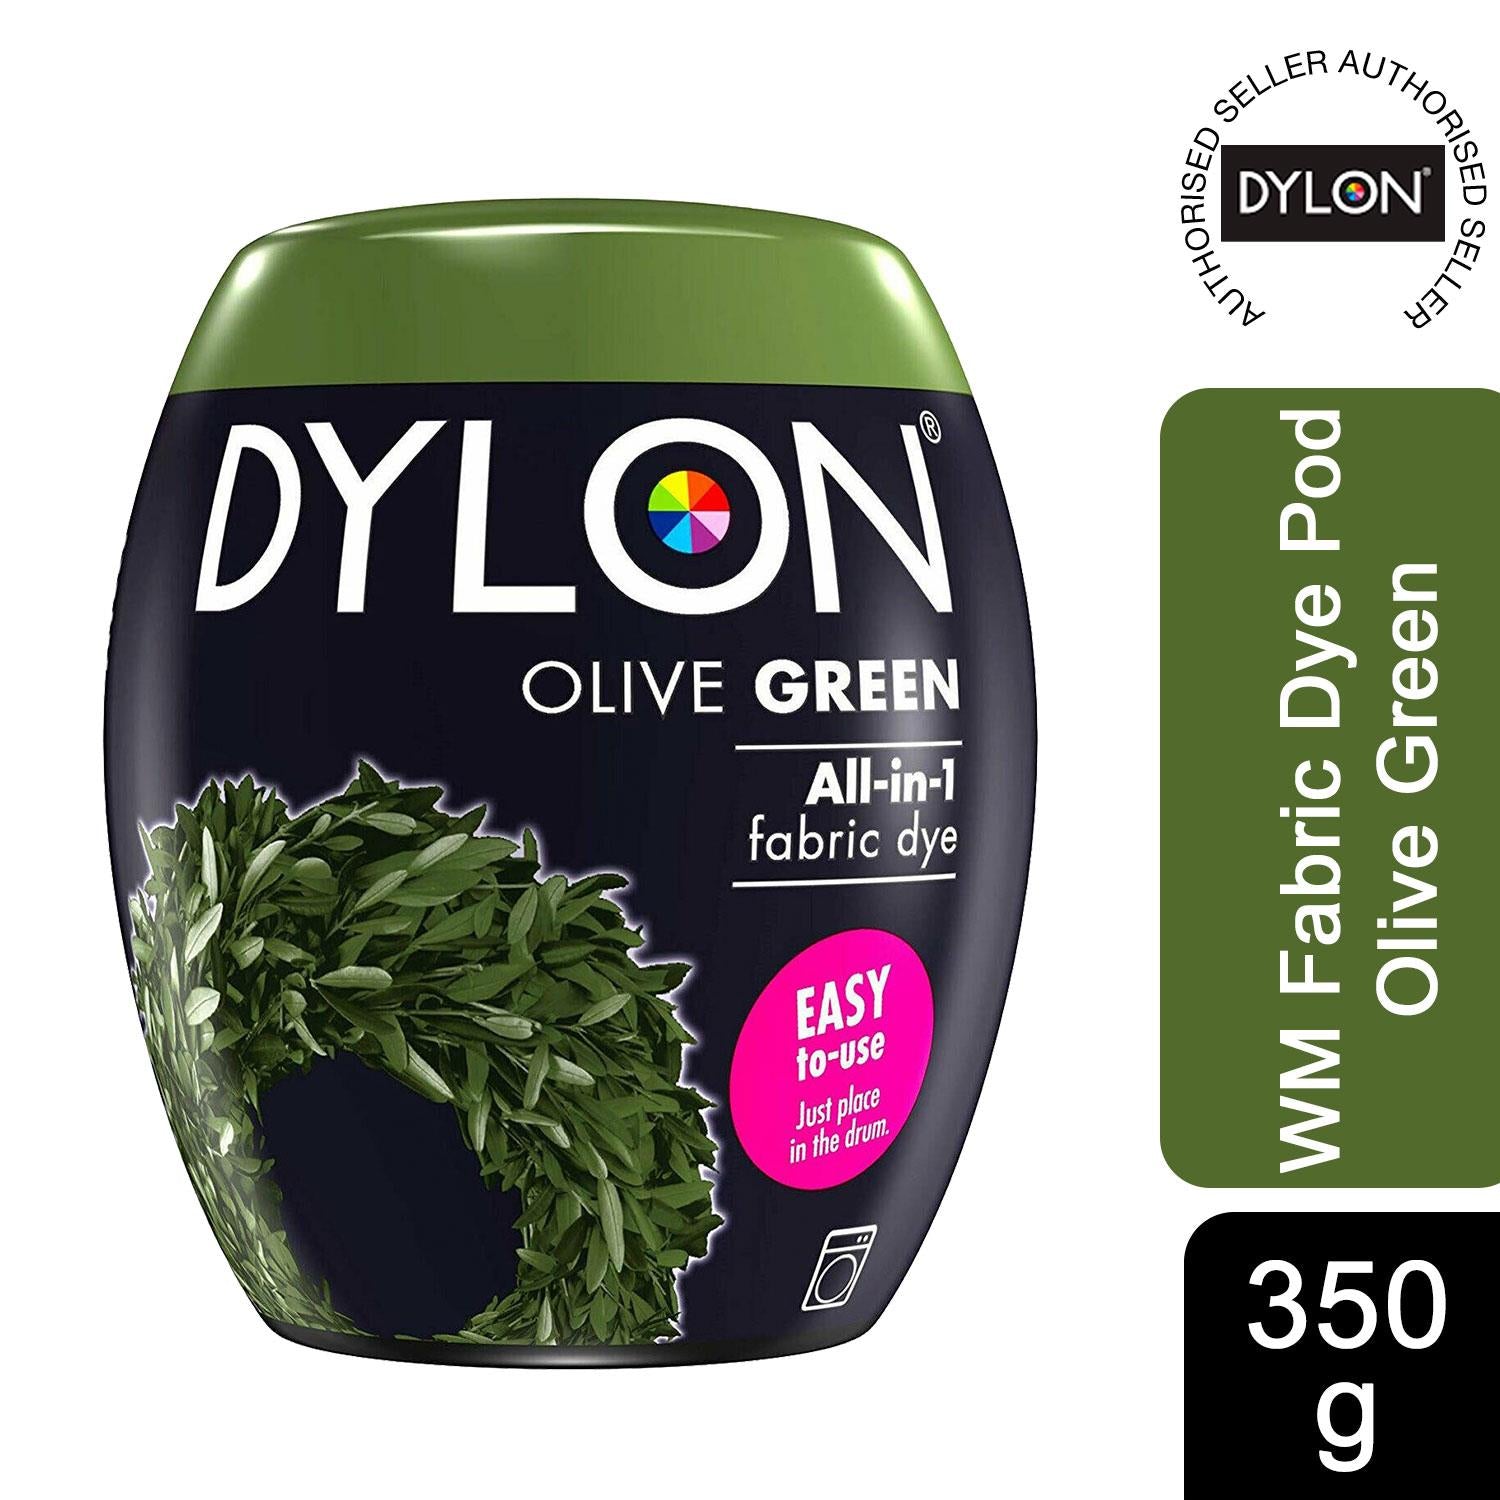 DYLON Fabric Machine Wash Dye - 350g